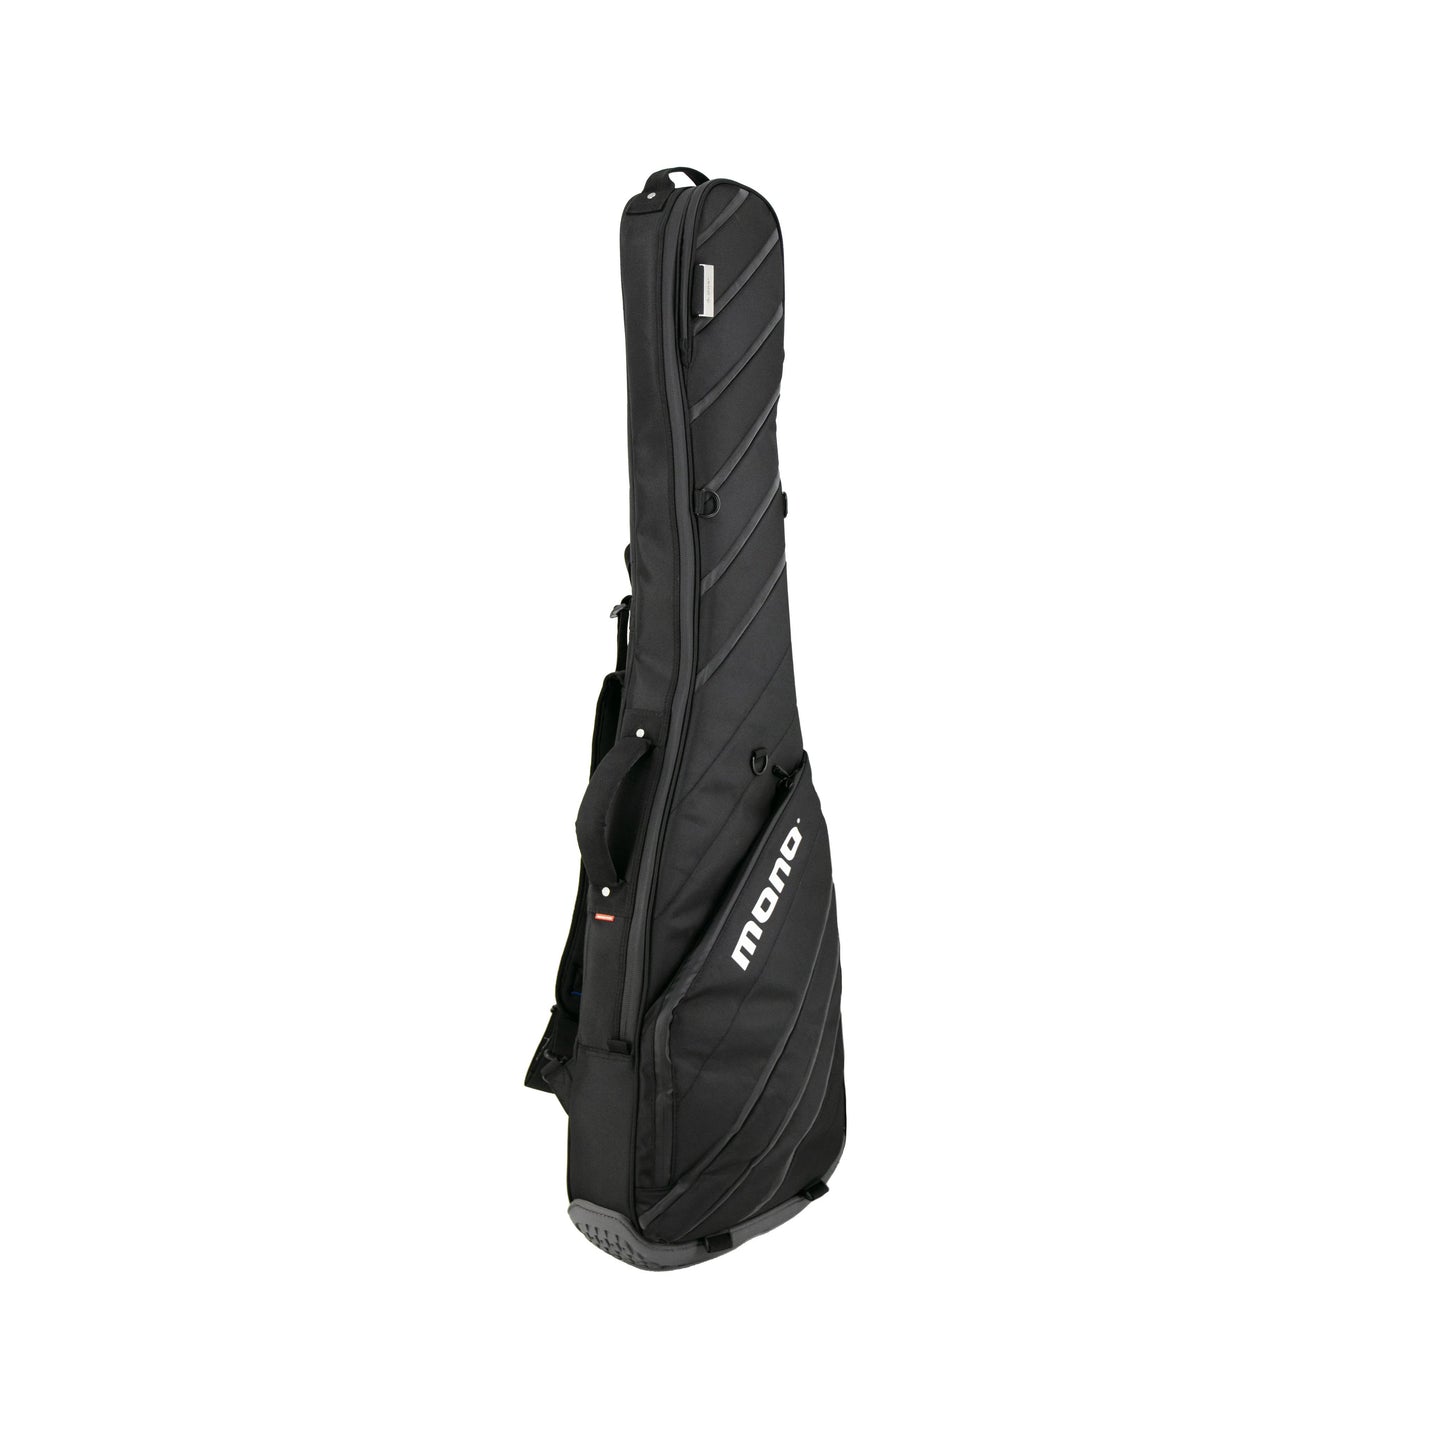 MONO Vertigo Ultra Bass Guitar Case, Black